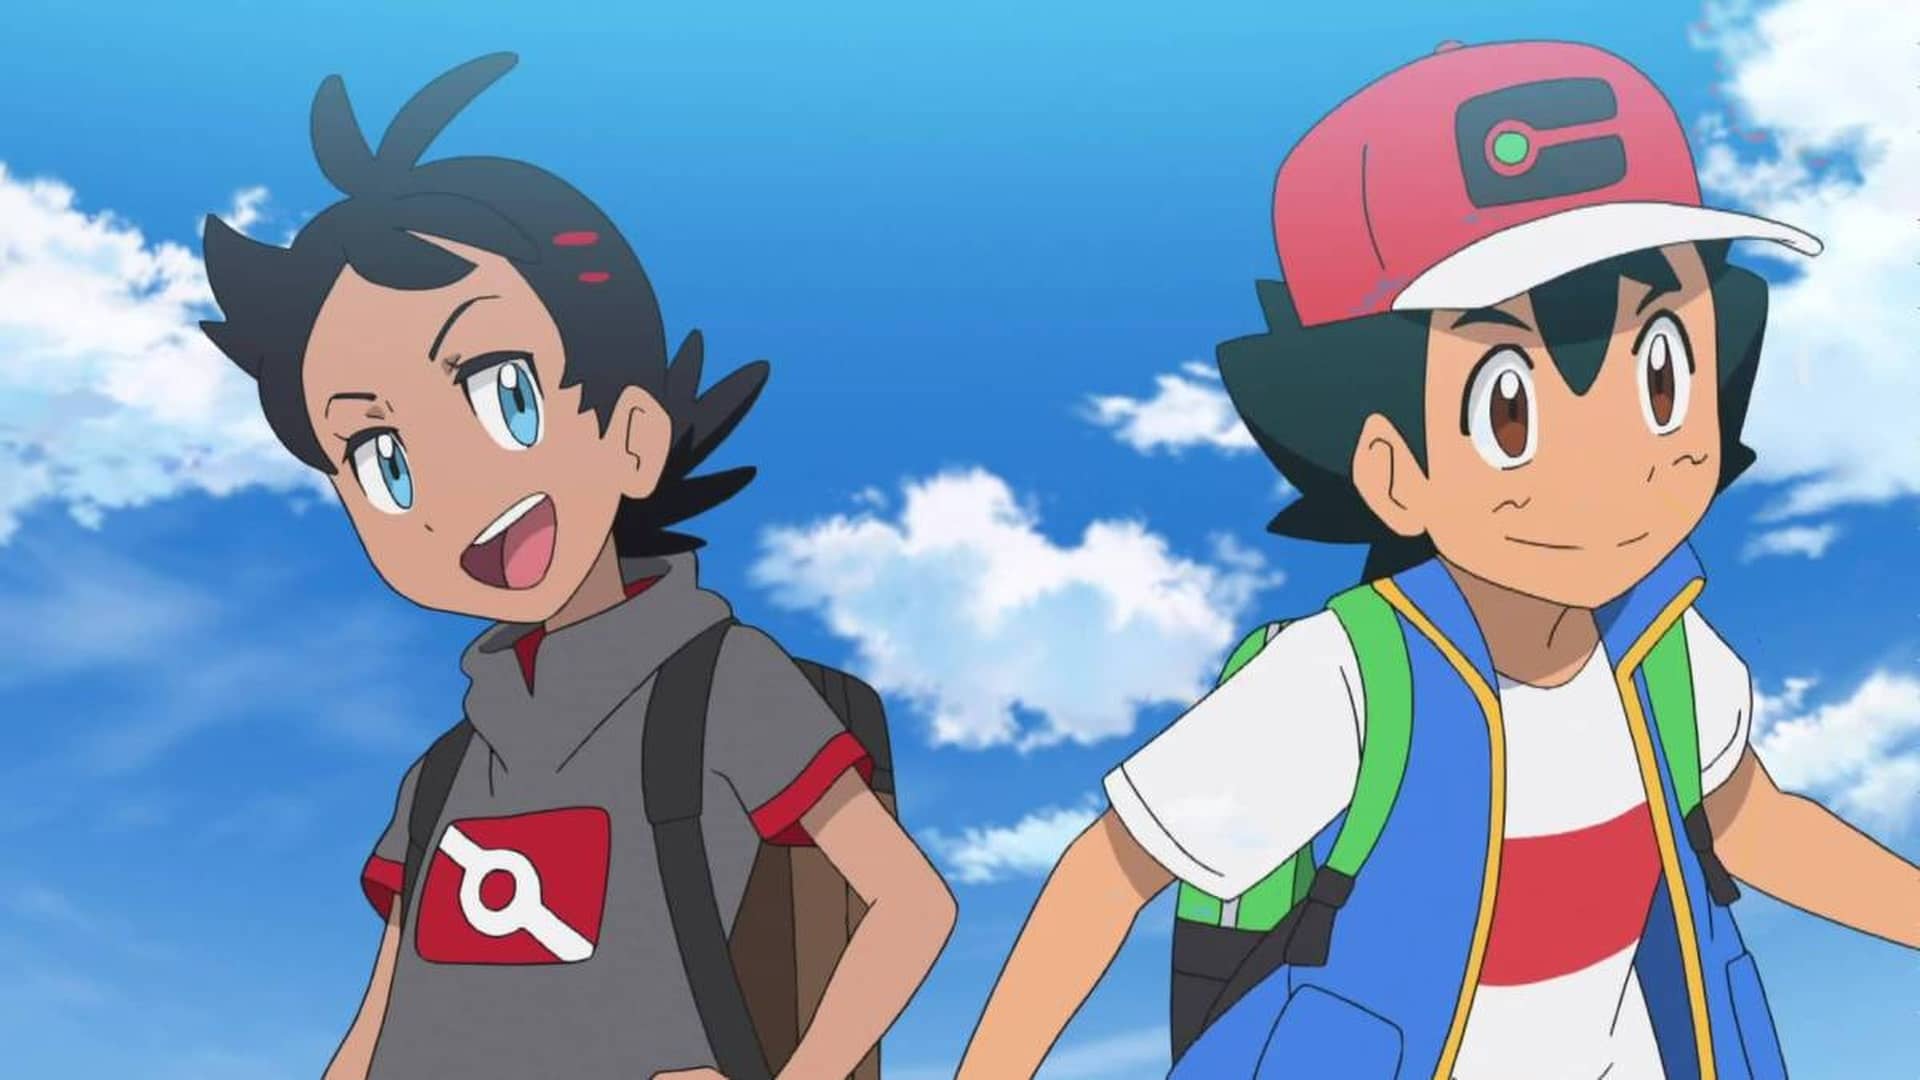 Creen haber hallado una referencia a un popular YouTuber en un capítulo de la serie Viajes Pokémon